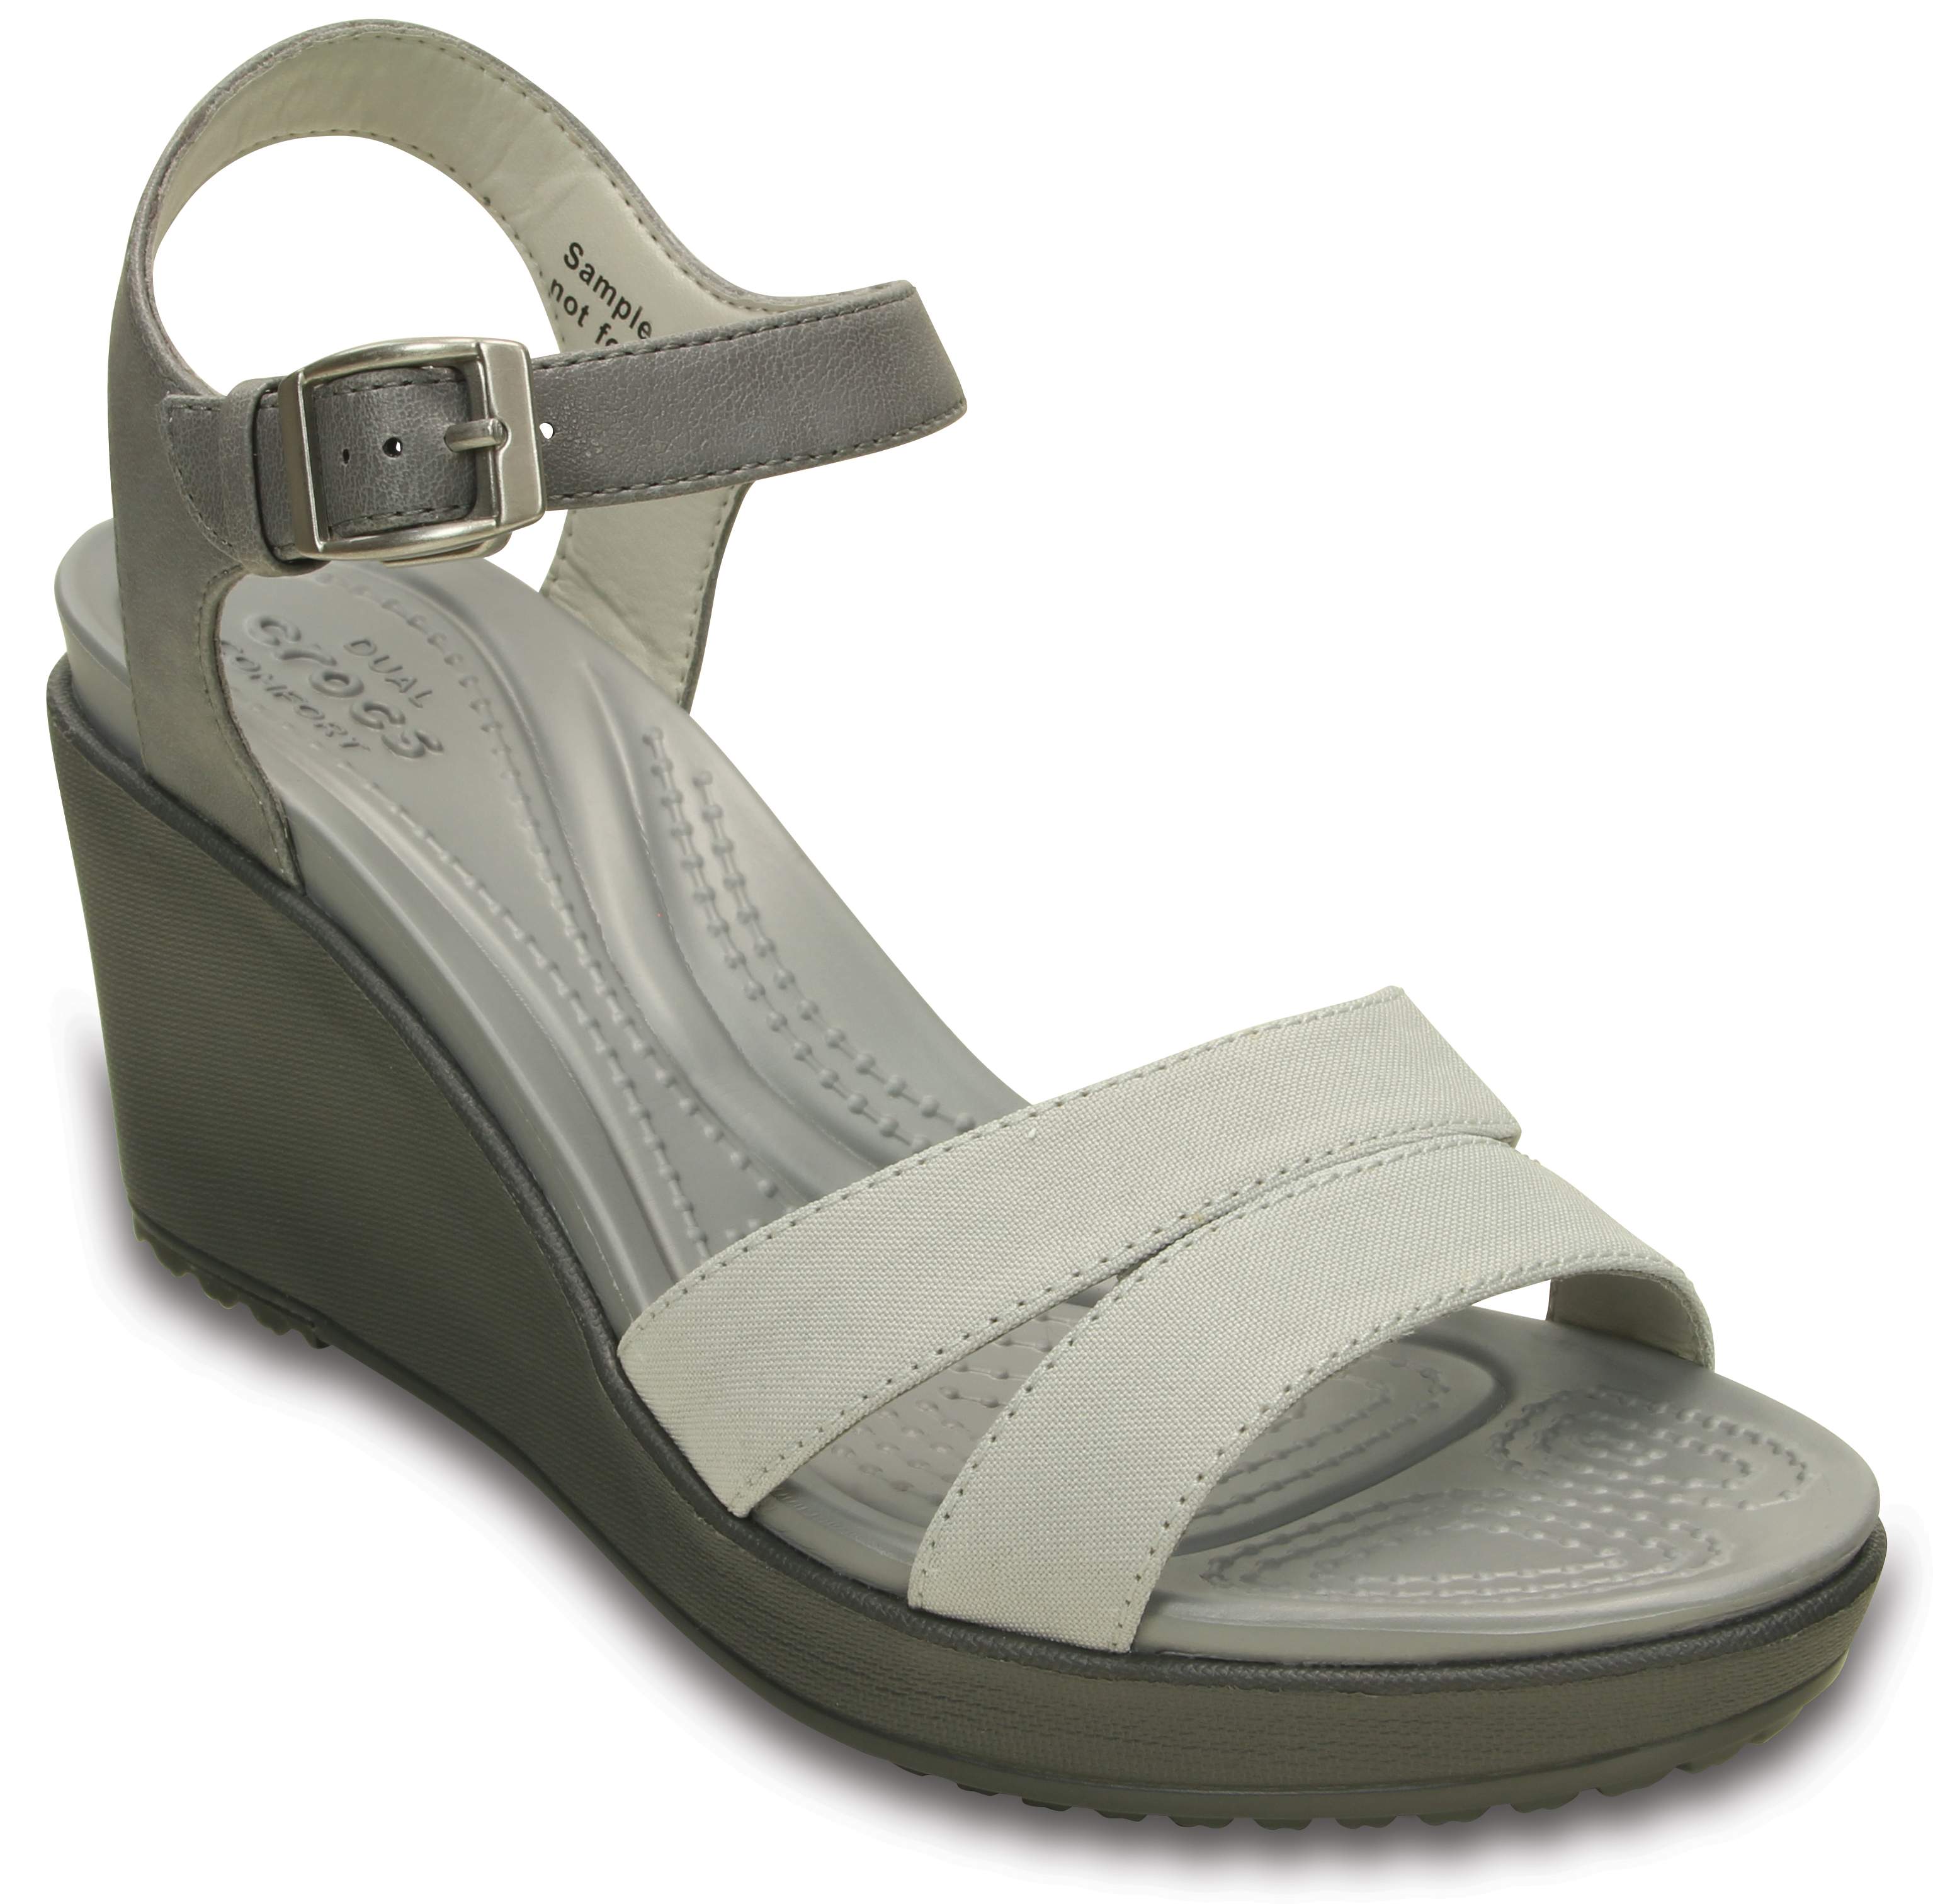 Crocs Womens Leigh II Ankle Strap Wedge Sandal | eBay